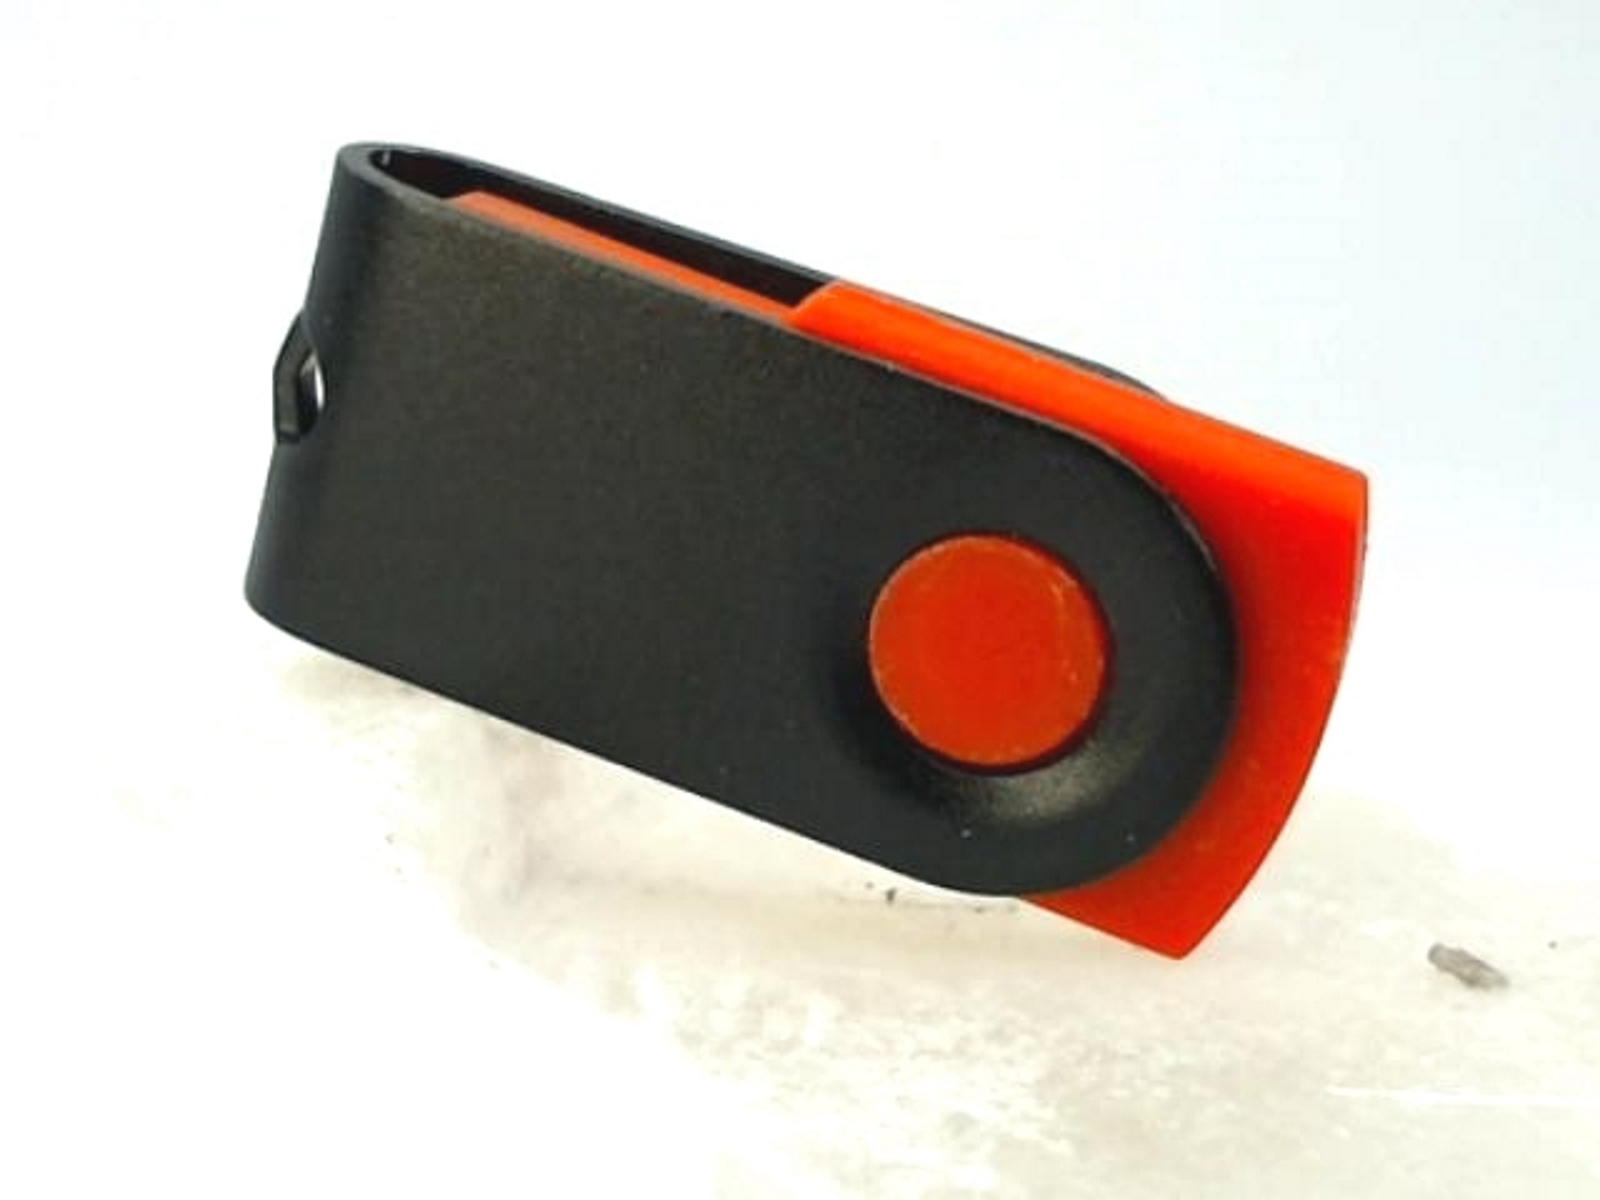 USB GERMANY ® MINI-SWIVEL USB-Stick GB) (Rot-Schwarz, 4